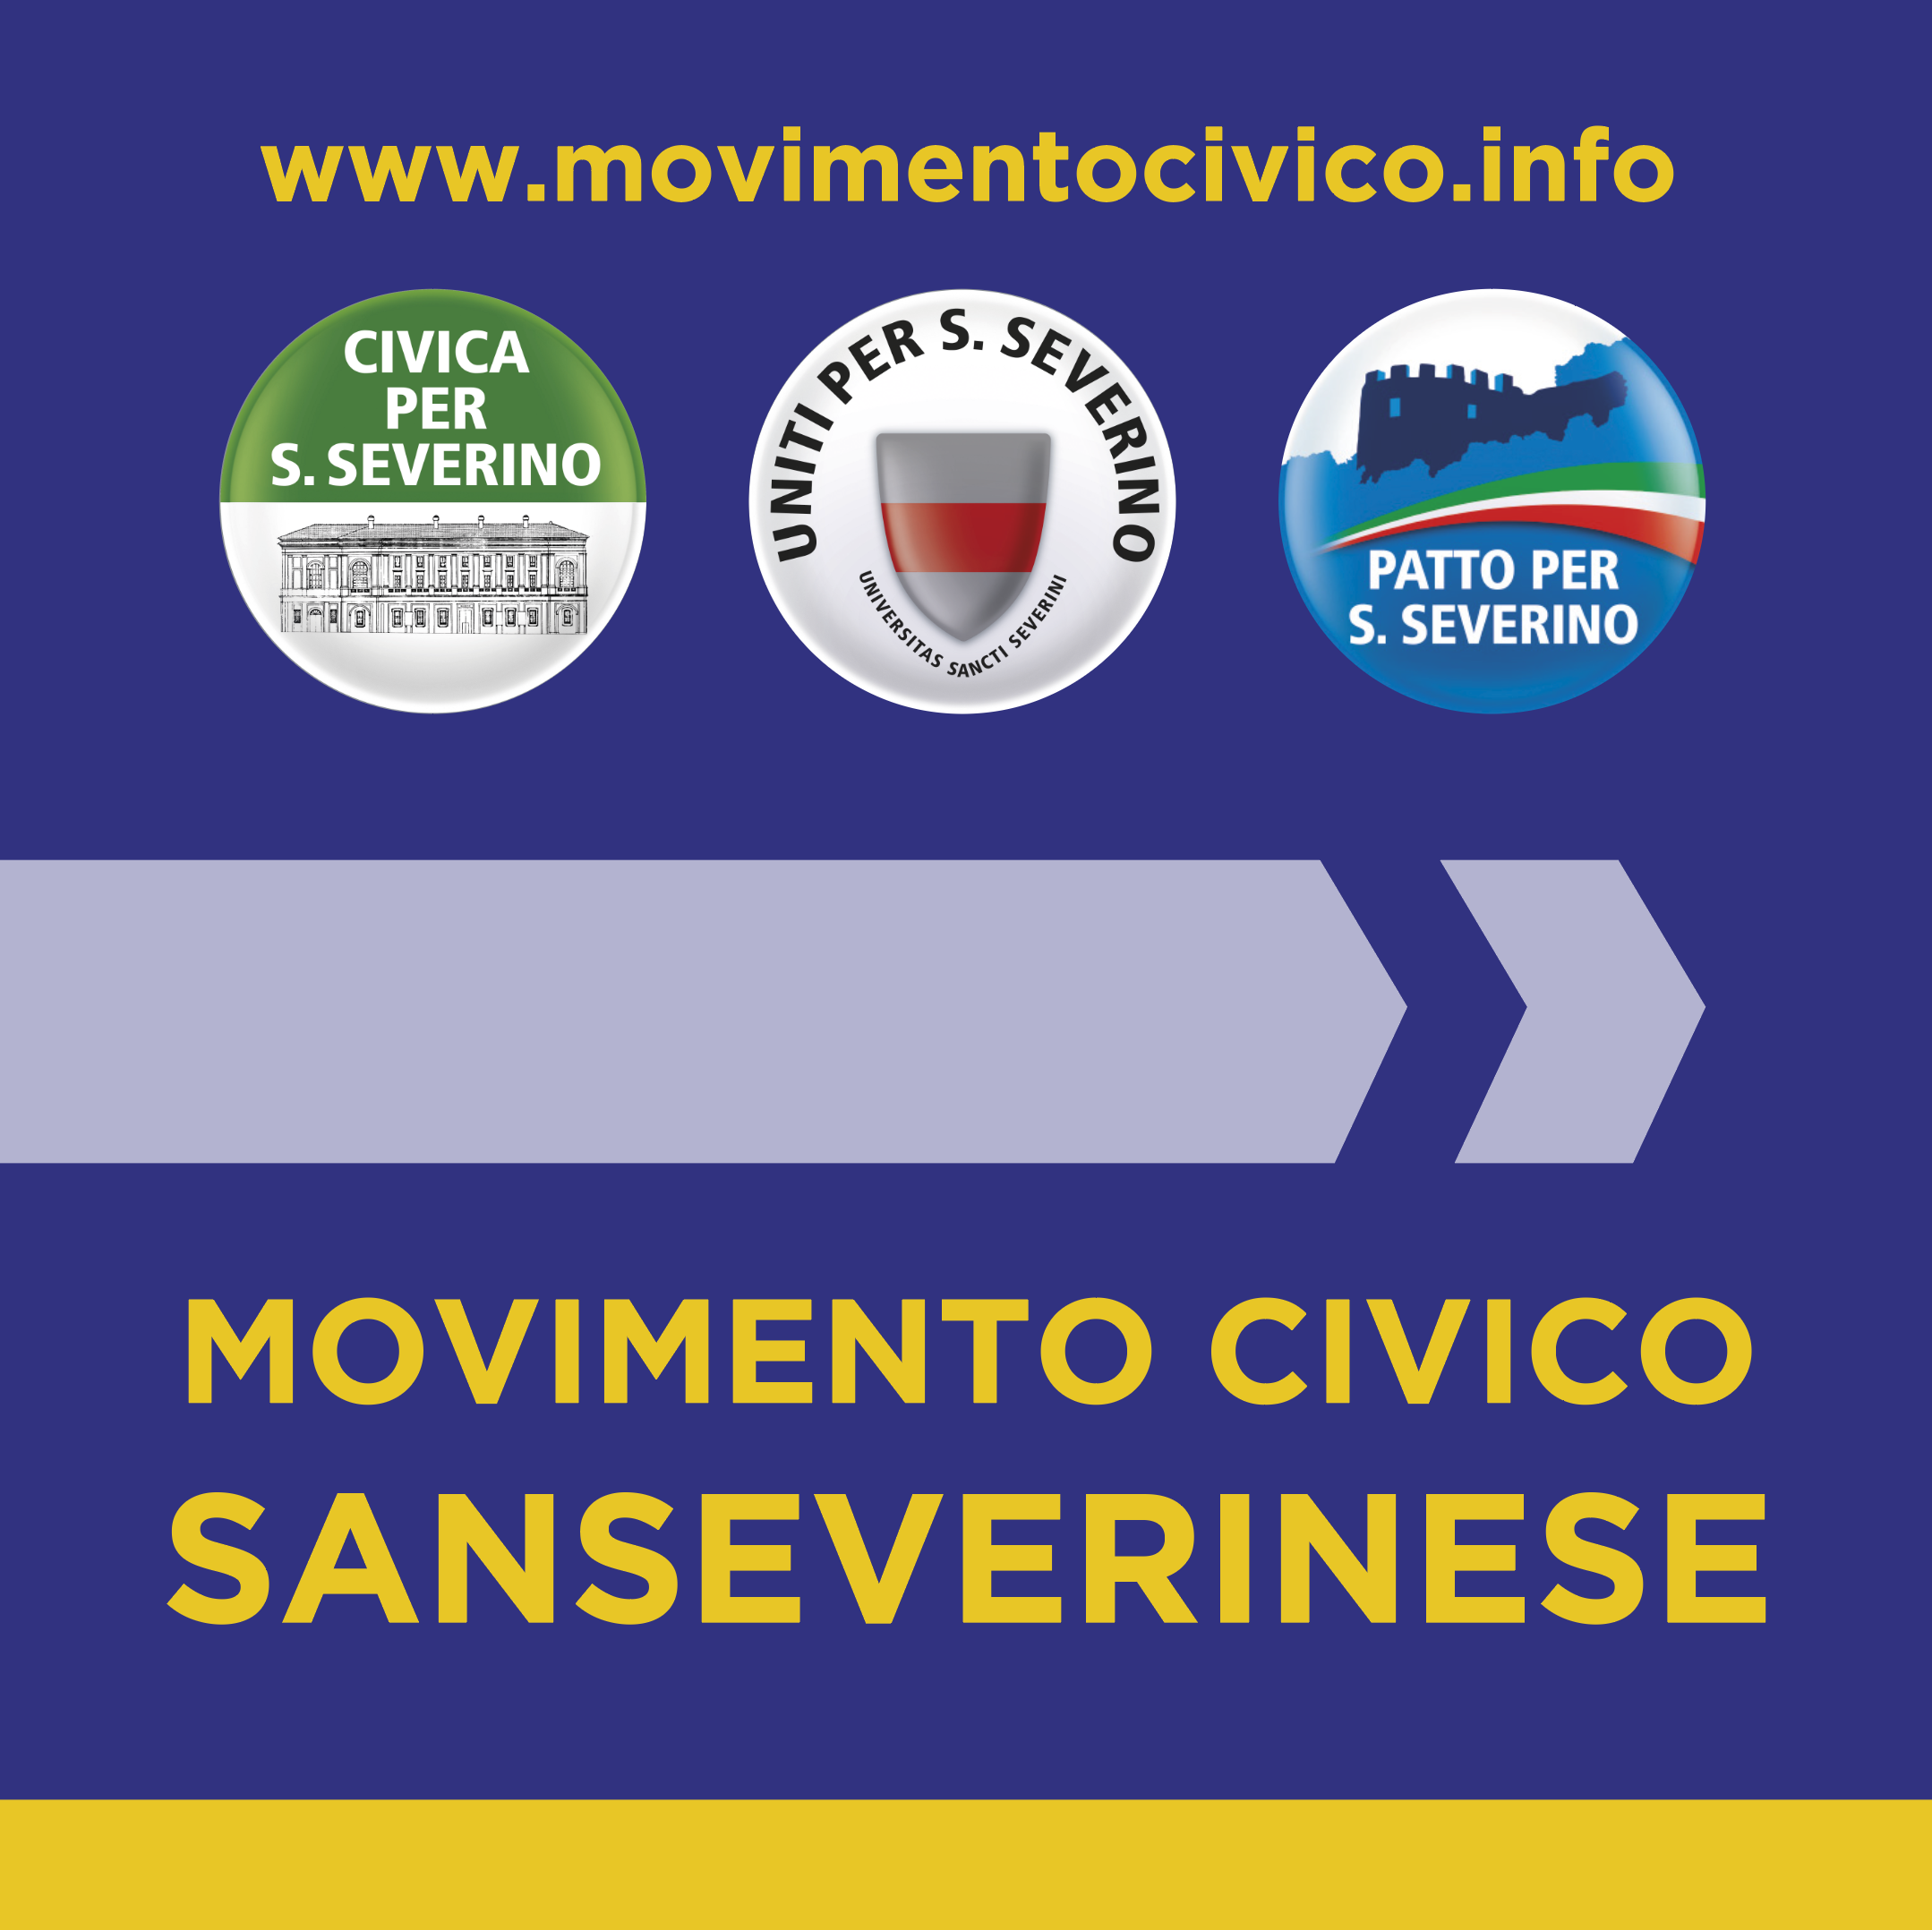 Mercato San Severino: Amministrative, Movimento Civico Sanseverinese, Piazza del Galdo, scaduto termine contrattuale per lavori edificio scolastico